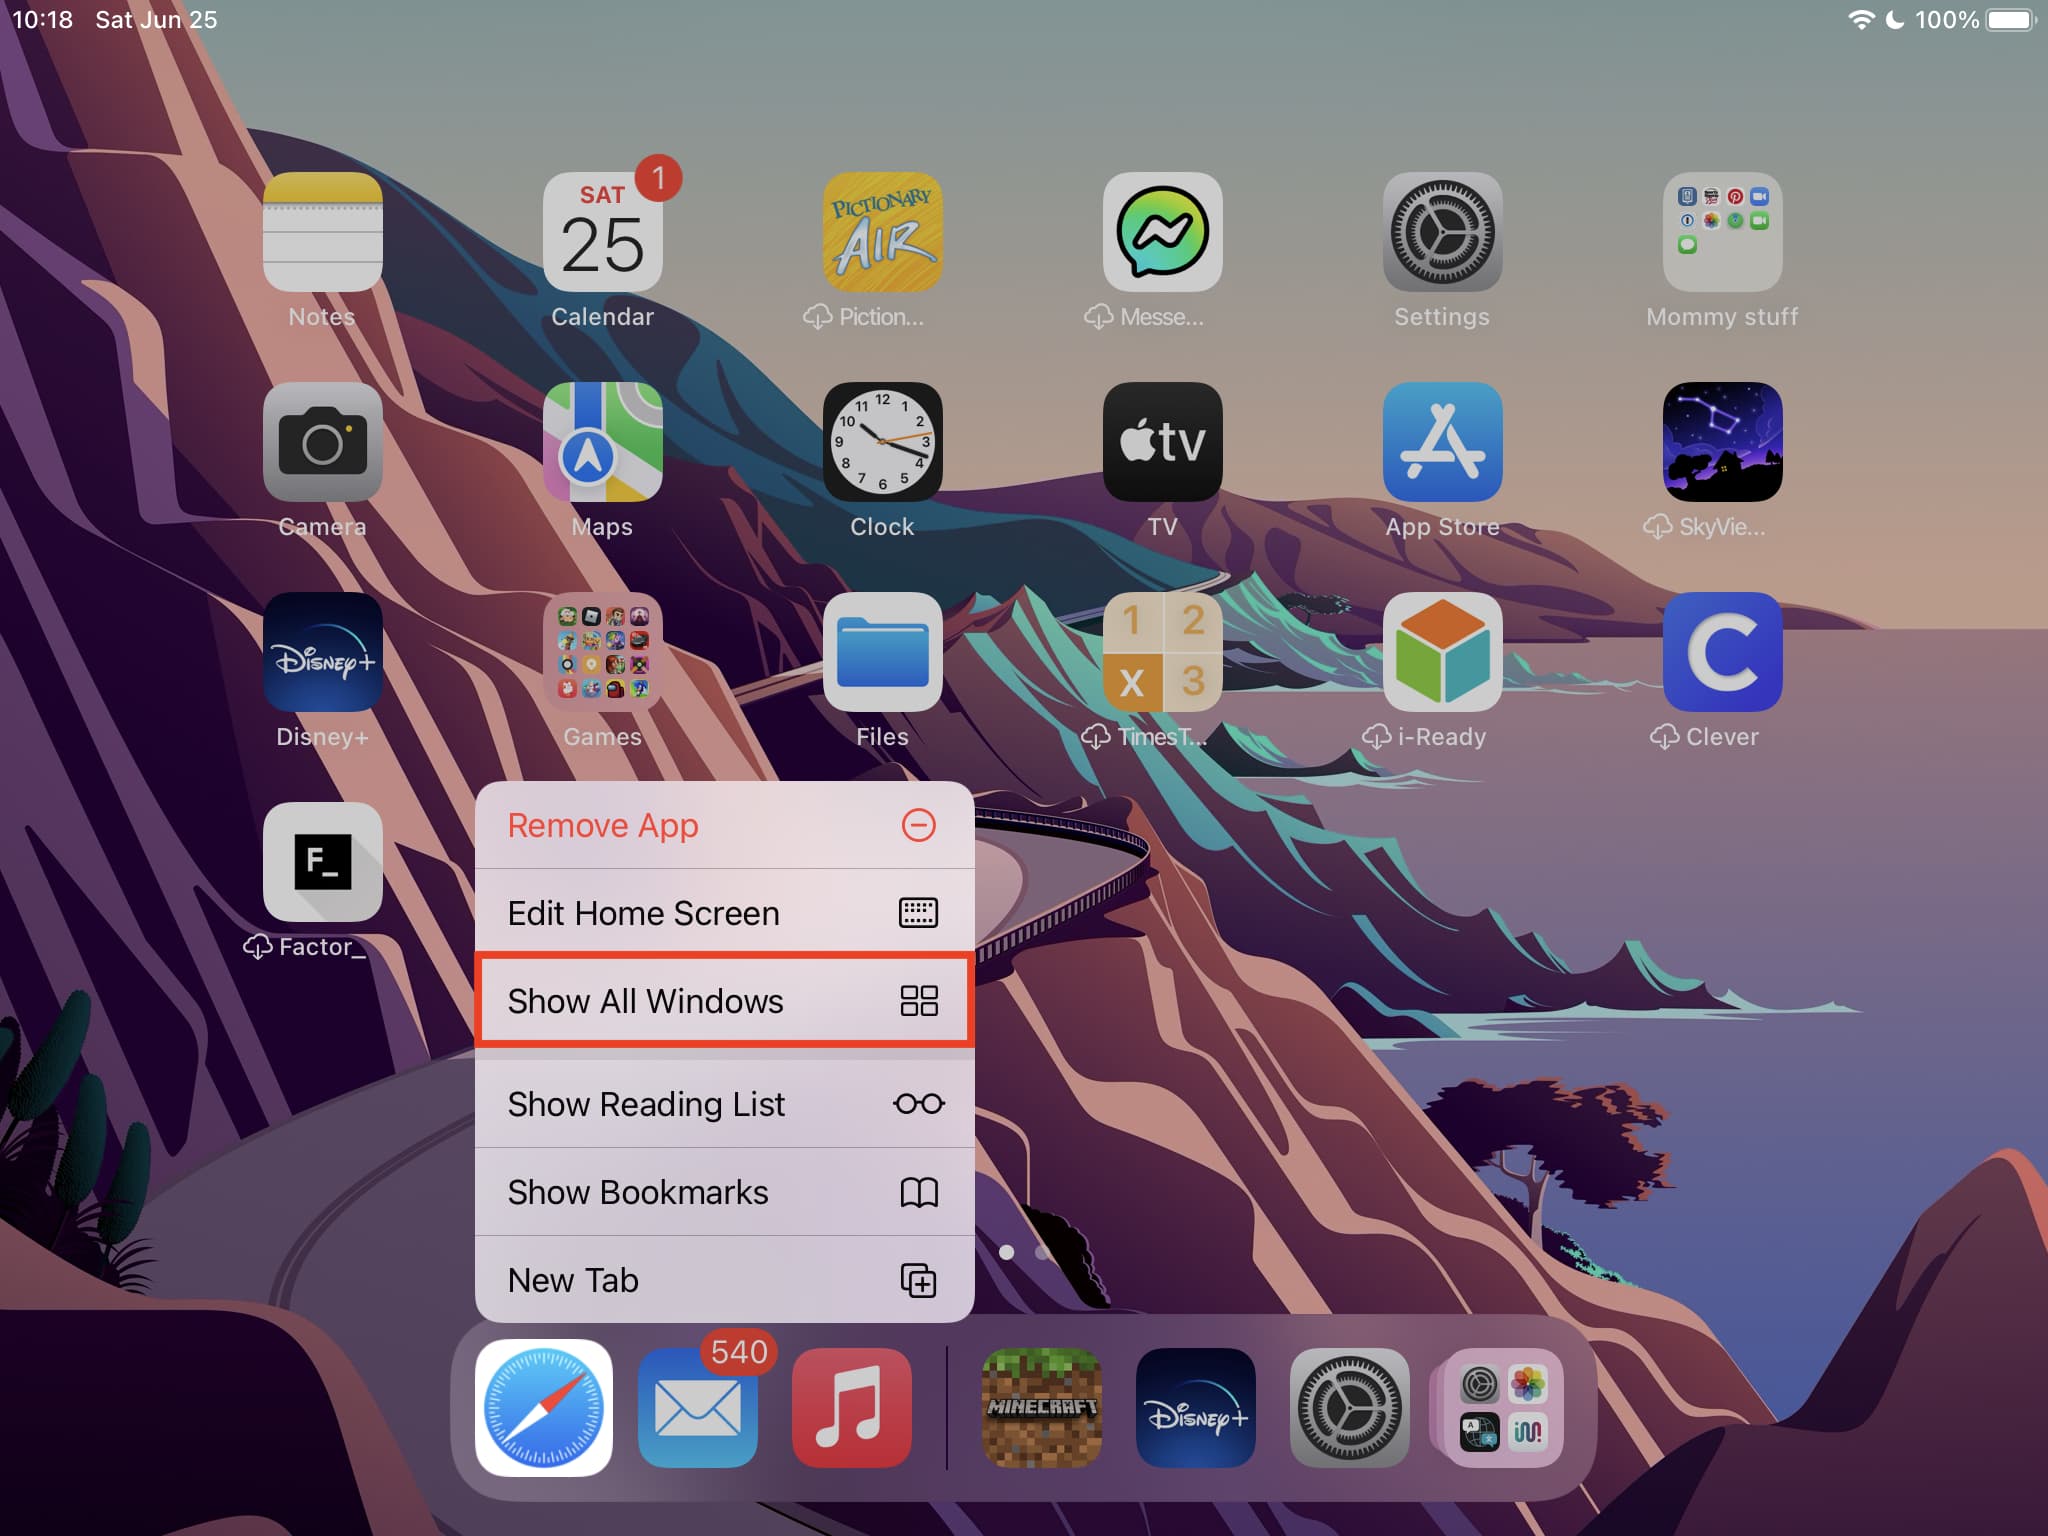 Show All Windows in Safari on iPad